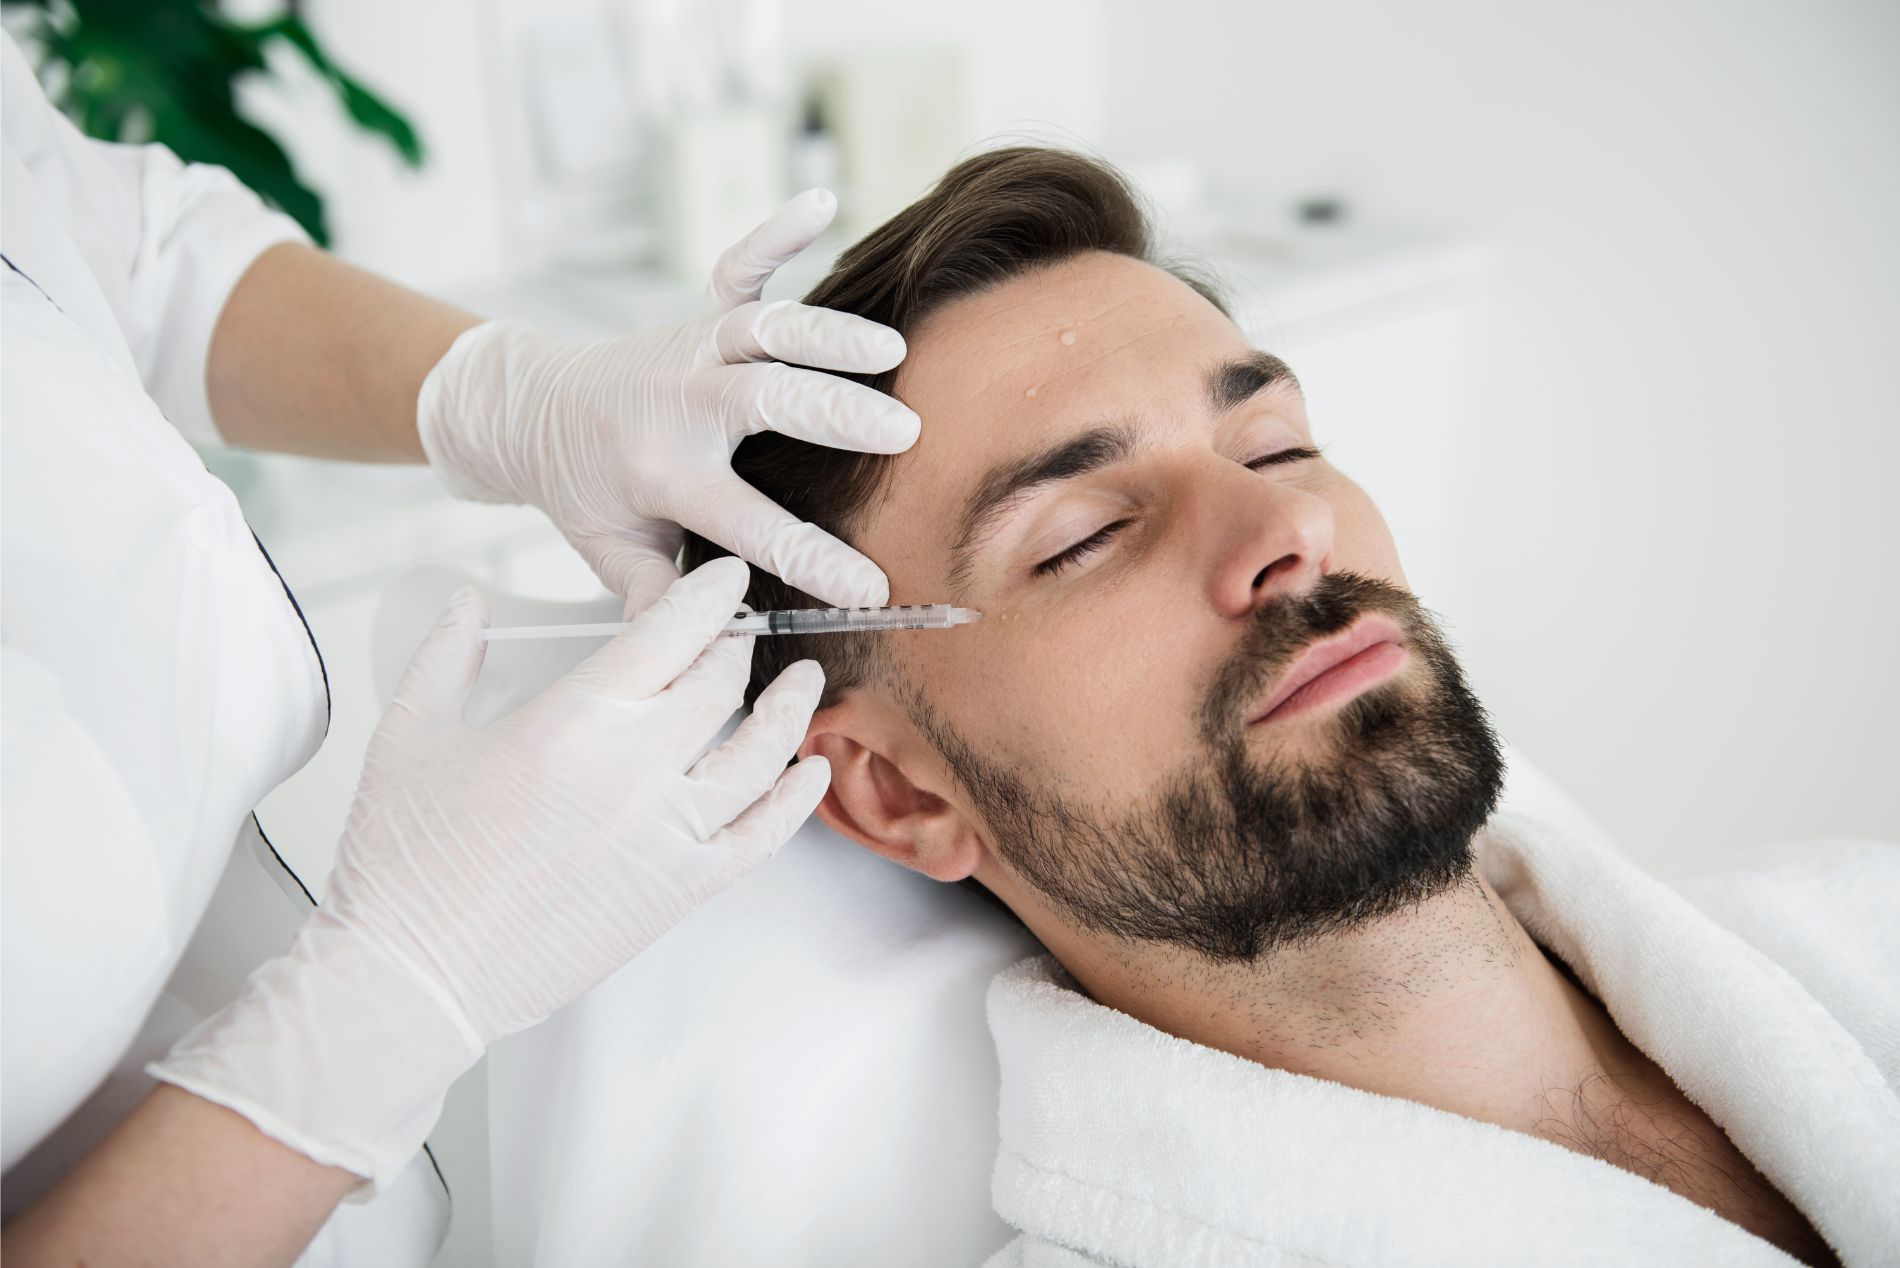 Man receiving cosmetic procedure